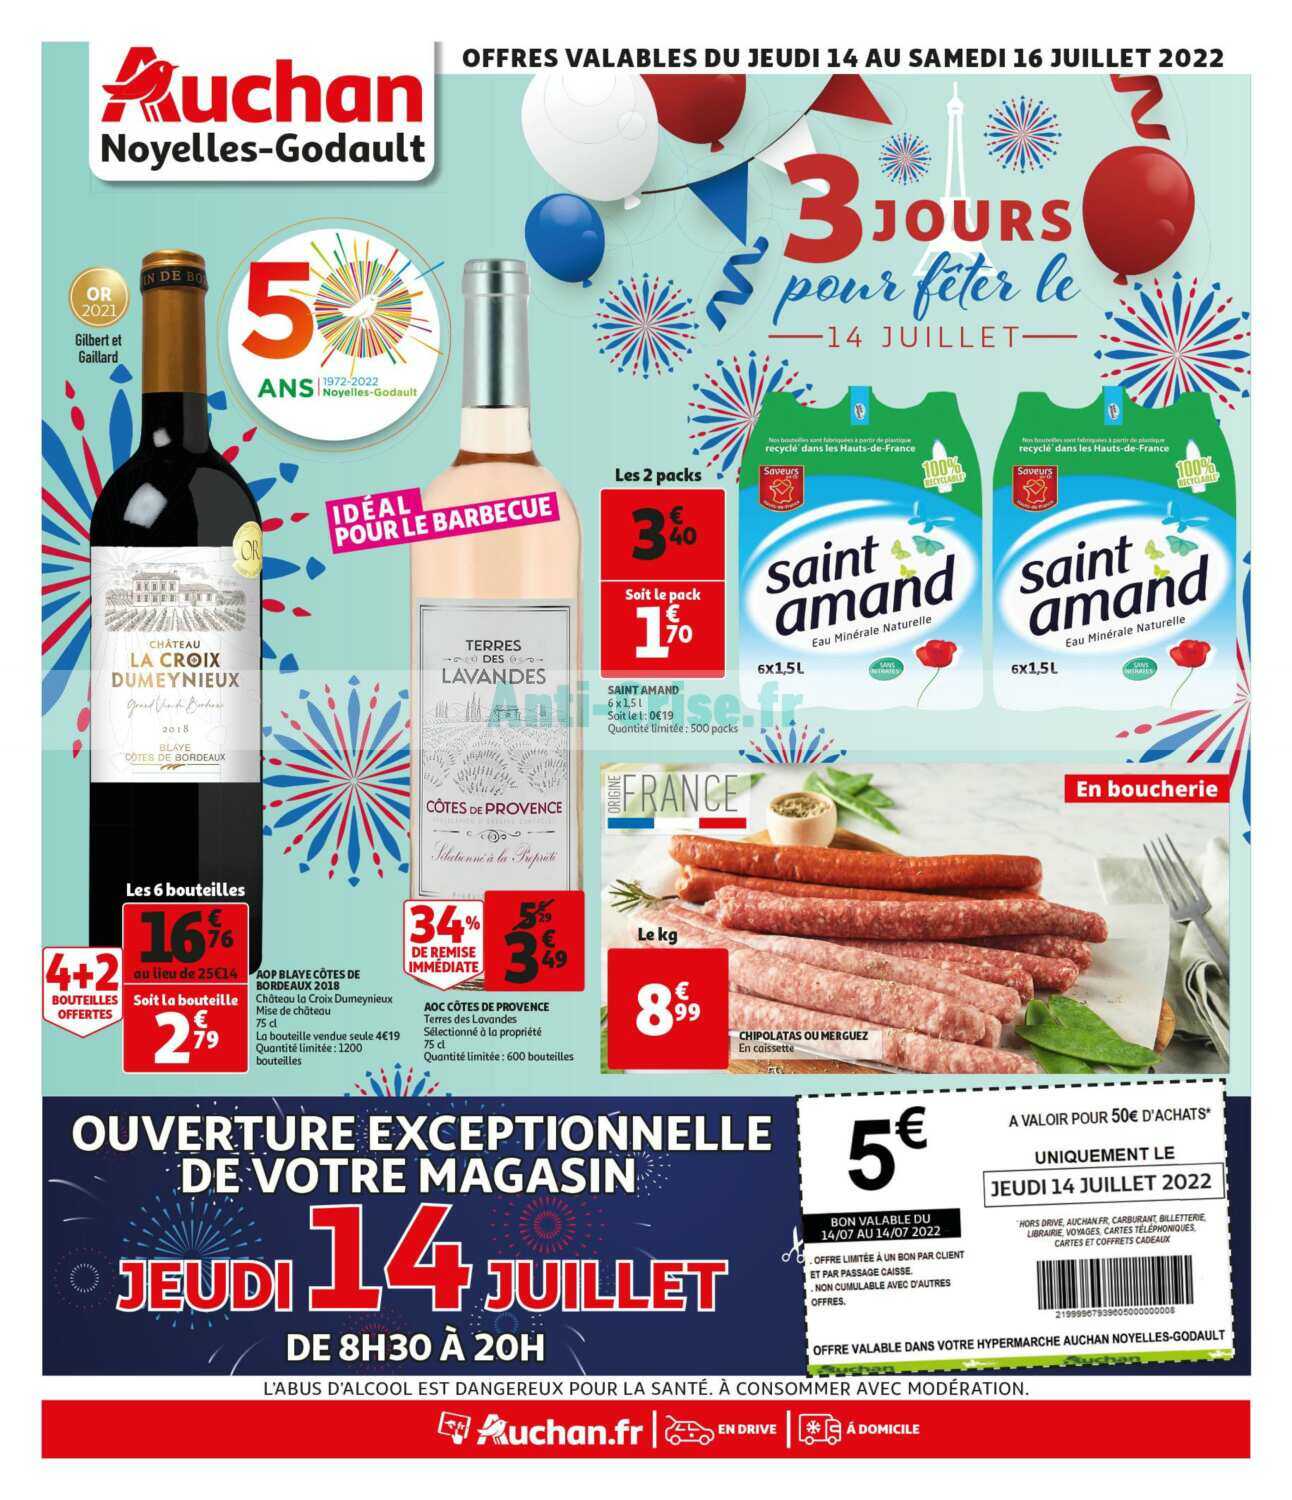 ➡️NOUVEAU COLLECTOR FONTIGNAC - Auchan Hypermarché Béthune